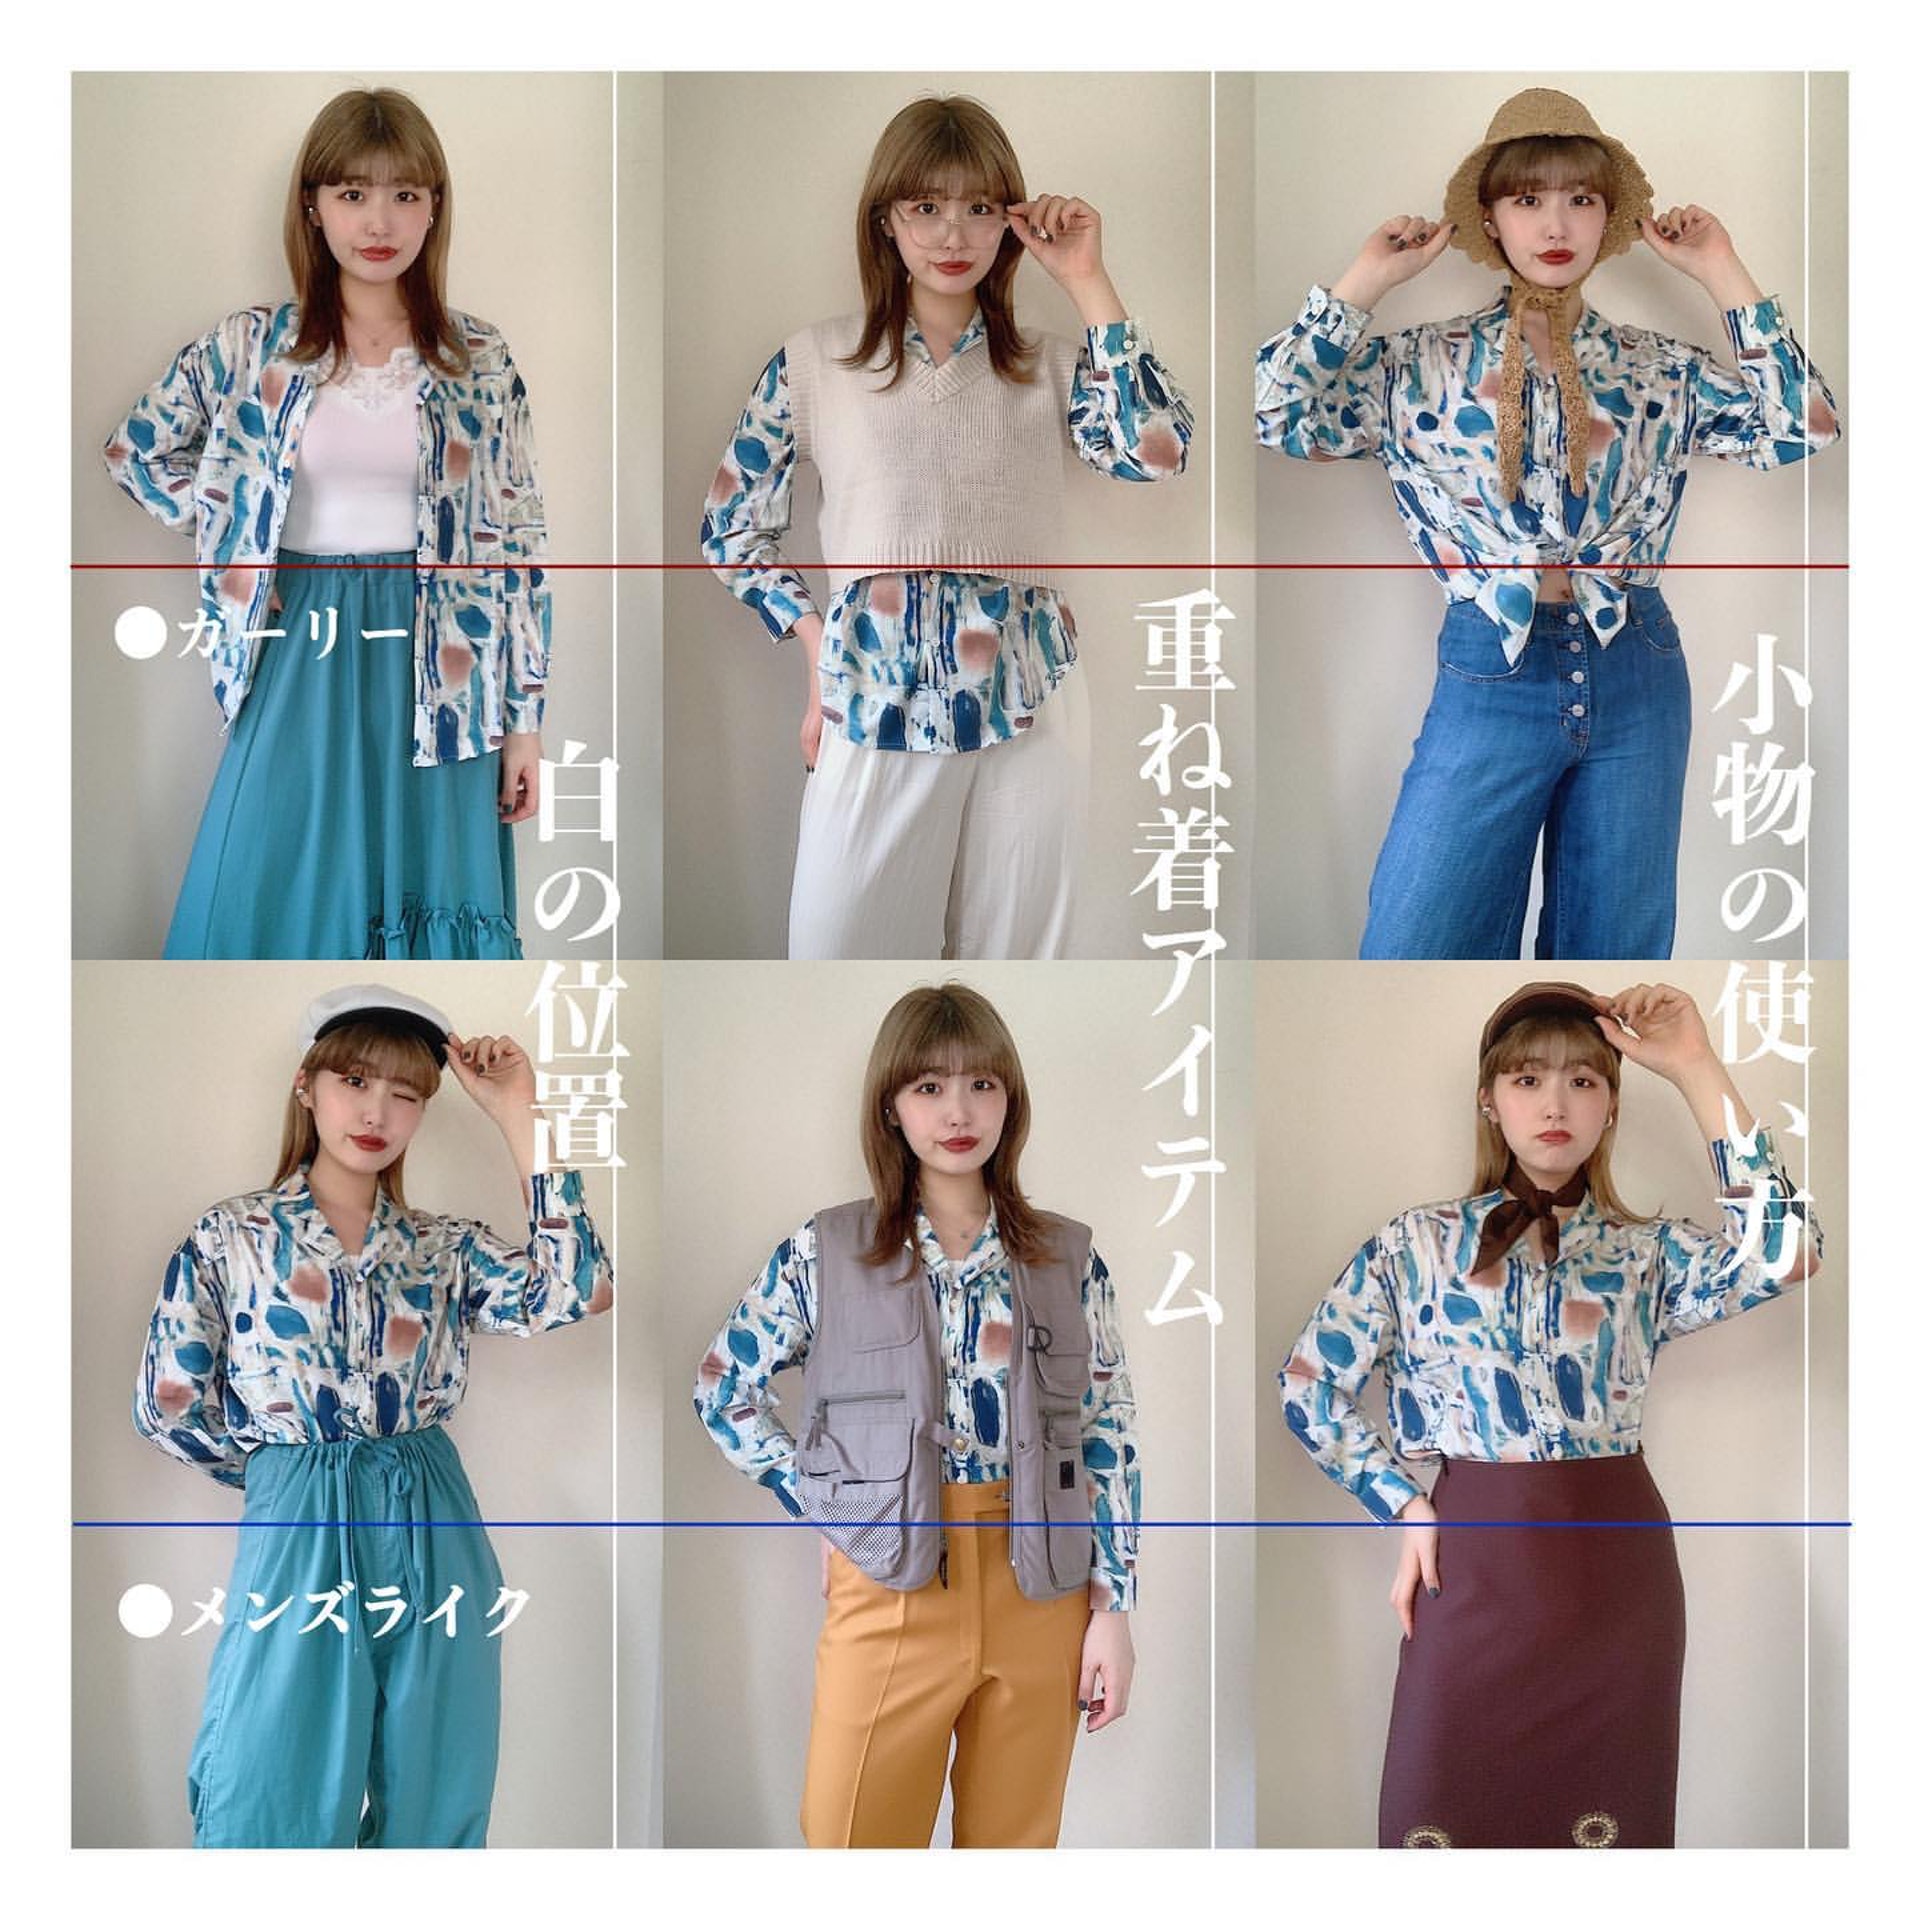 同一件印花圖案恤衫如何搭配？日本女生Chaki就示範了6個造型。(__nmsk13@Instagram)